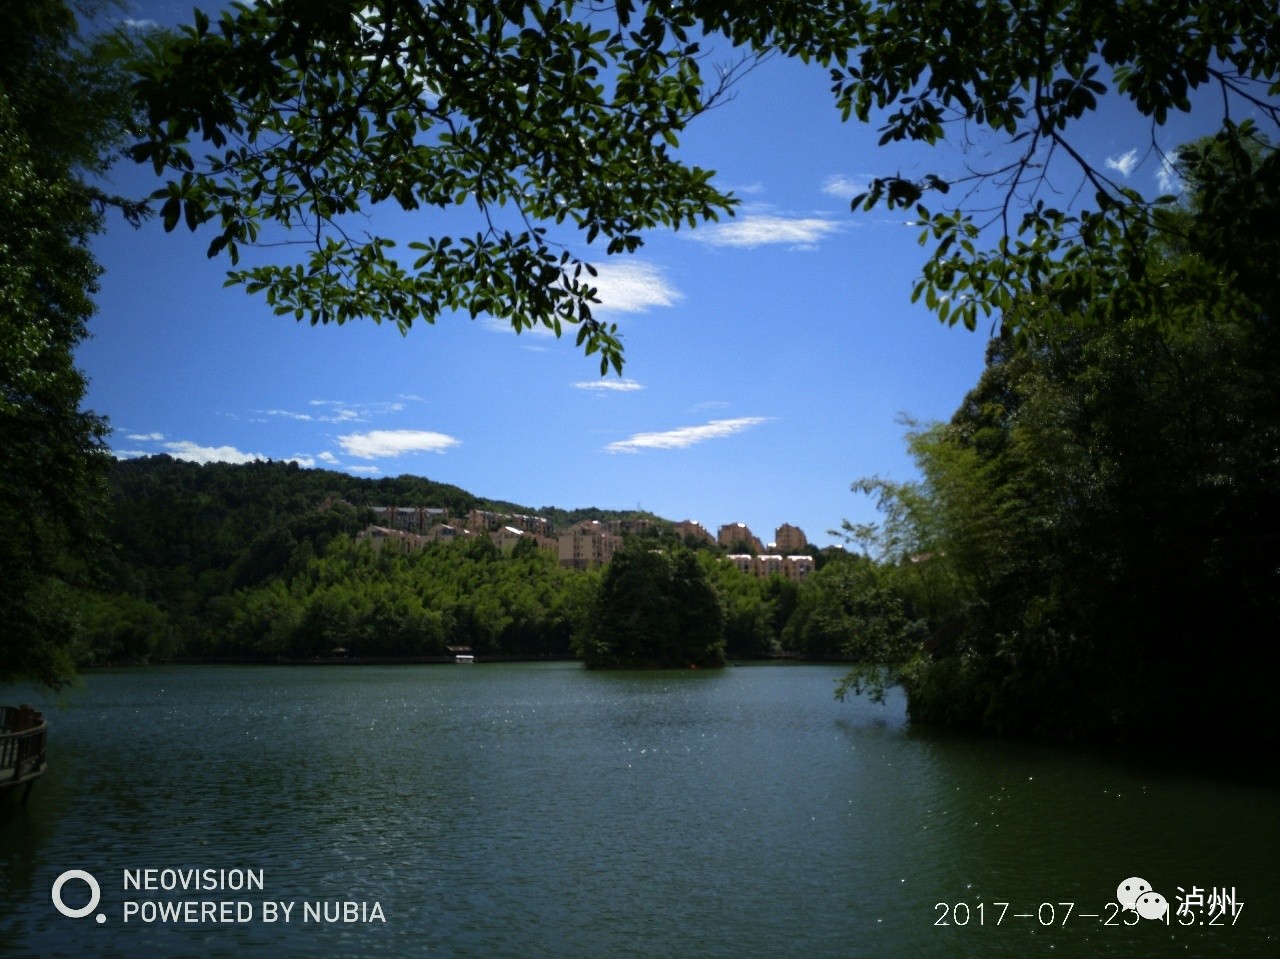 这是最近在贵州赤水天岛湖拍的一组美景,愿在这个炎热的夏天带给你一